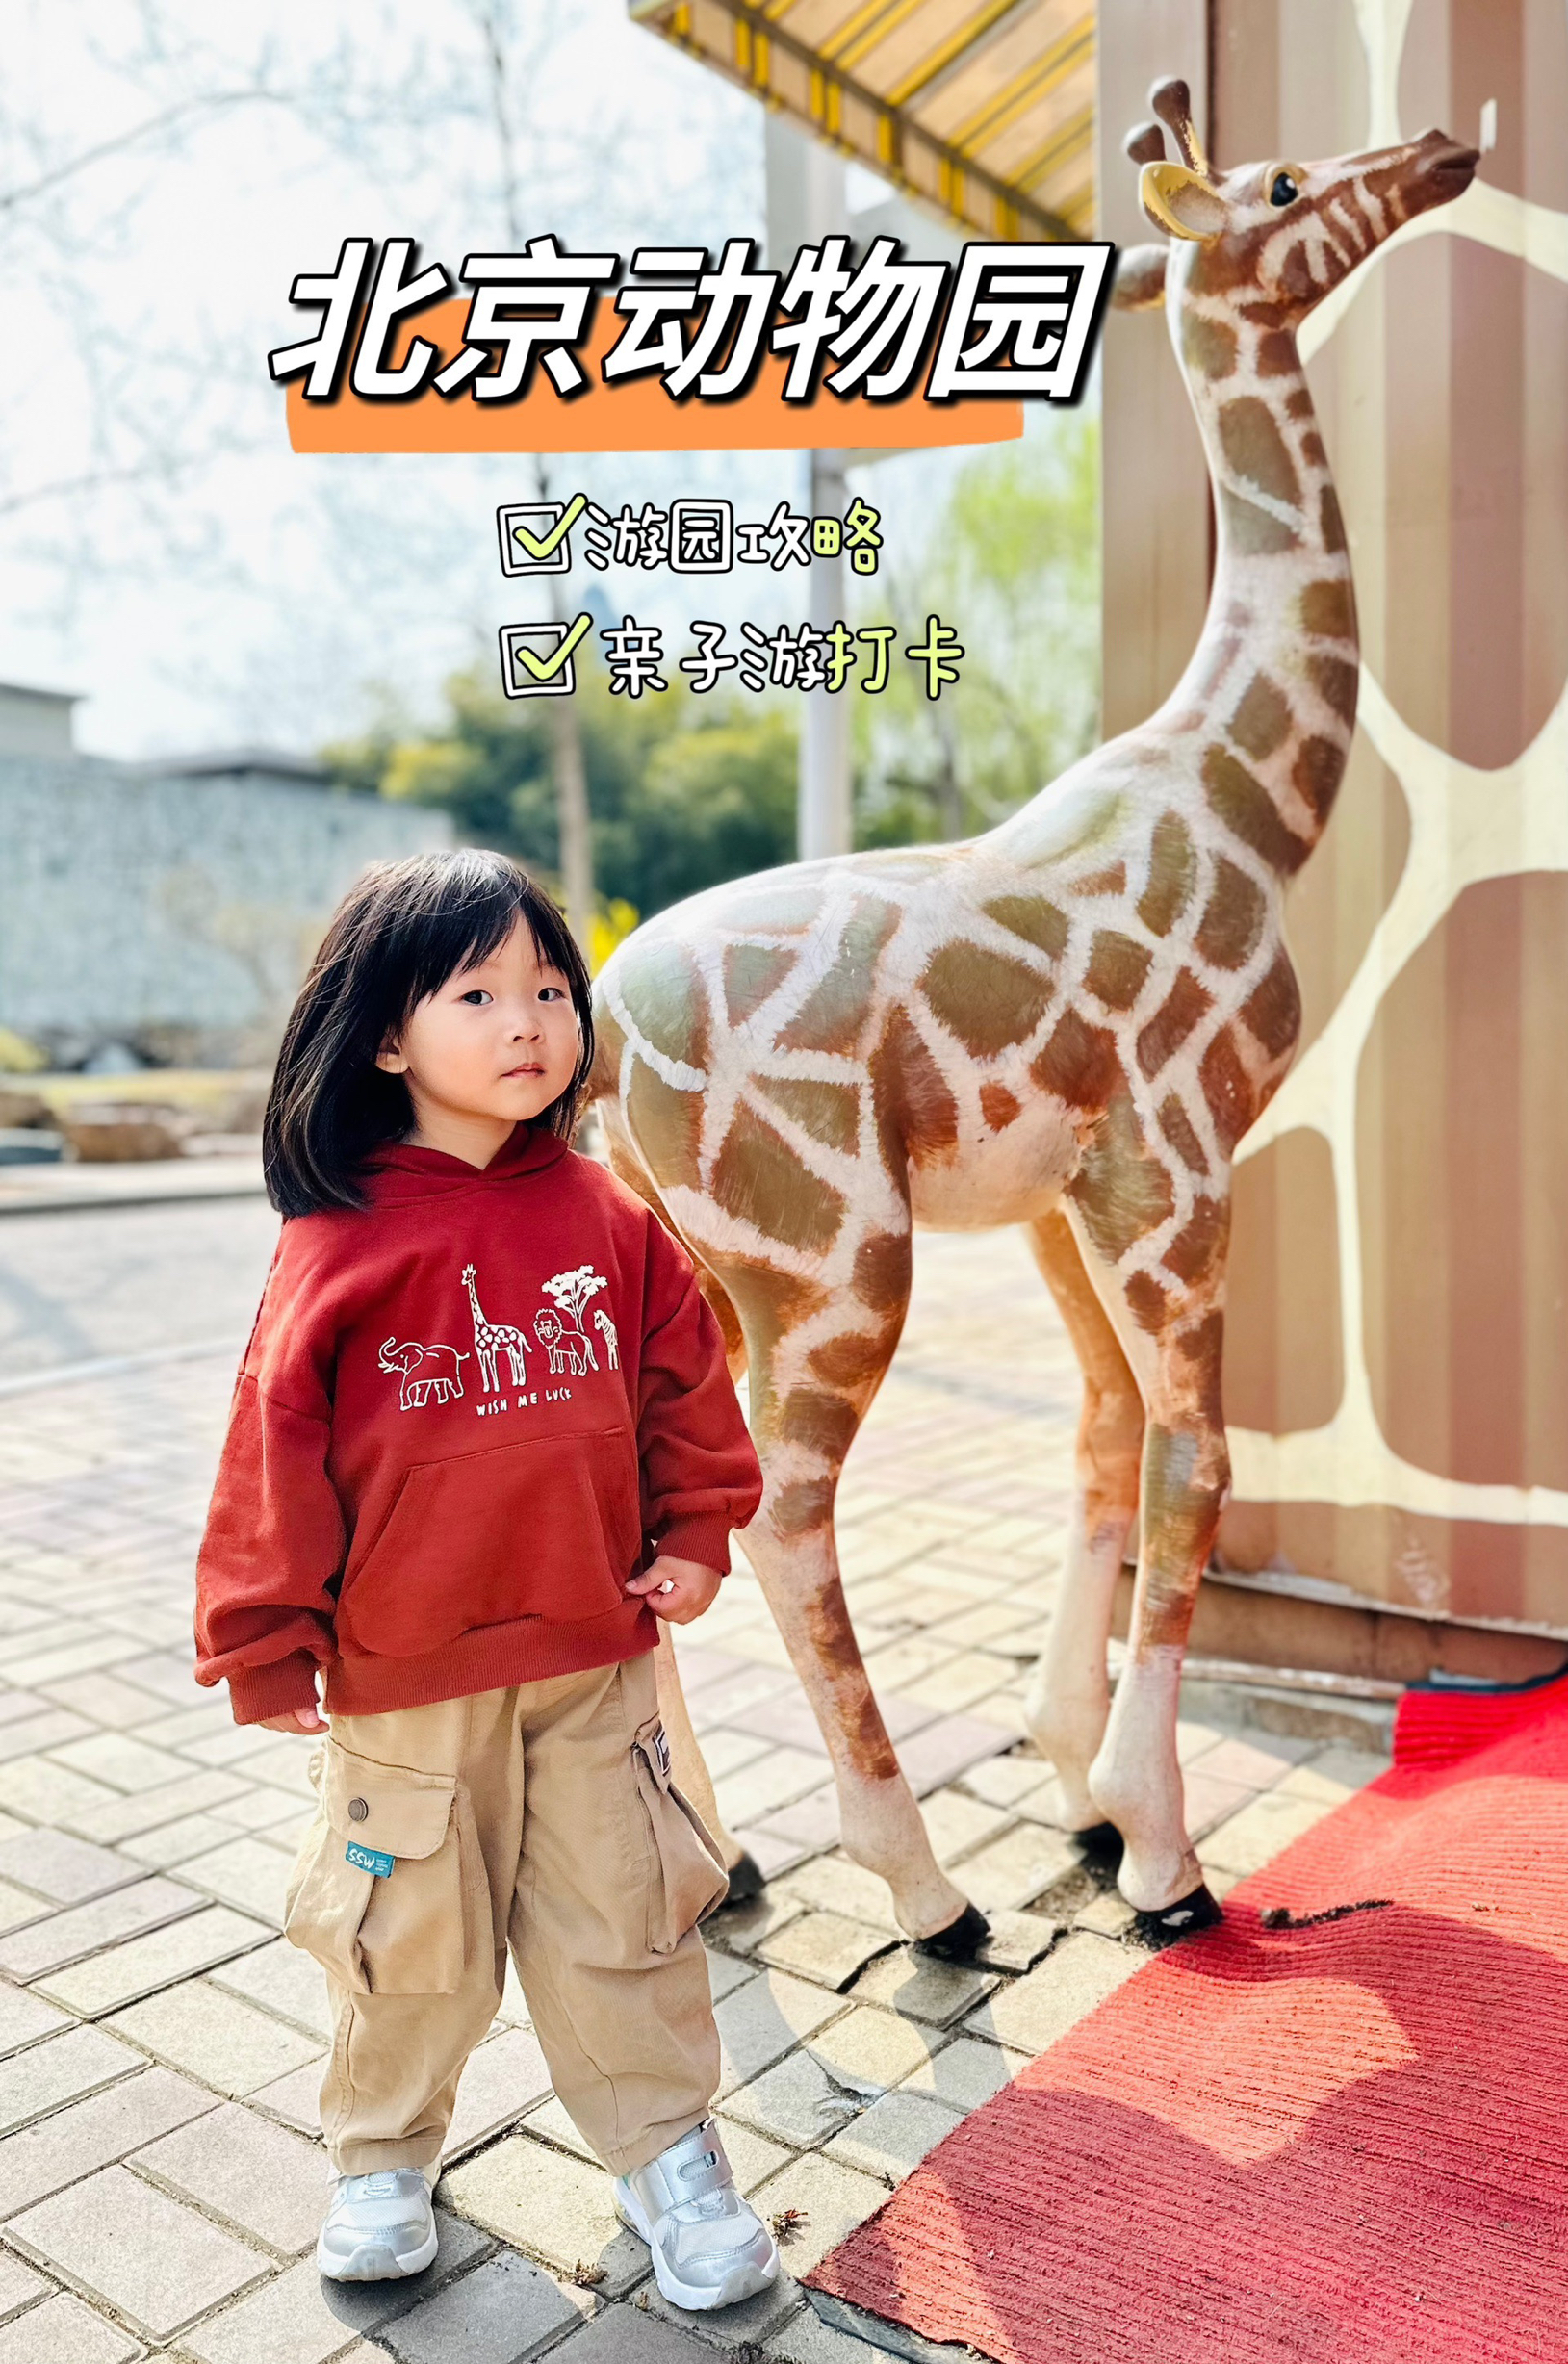 7刷北京动物园 | 周末亲子游全攻略